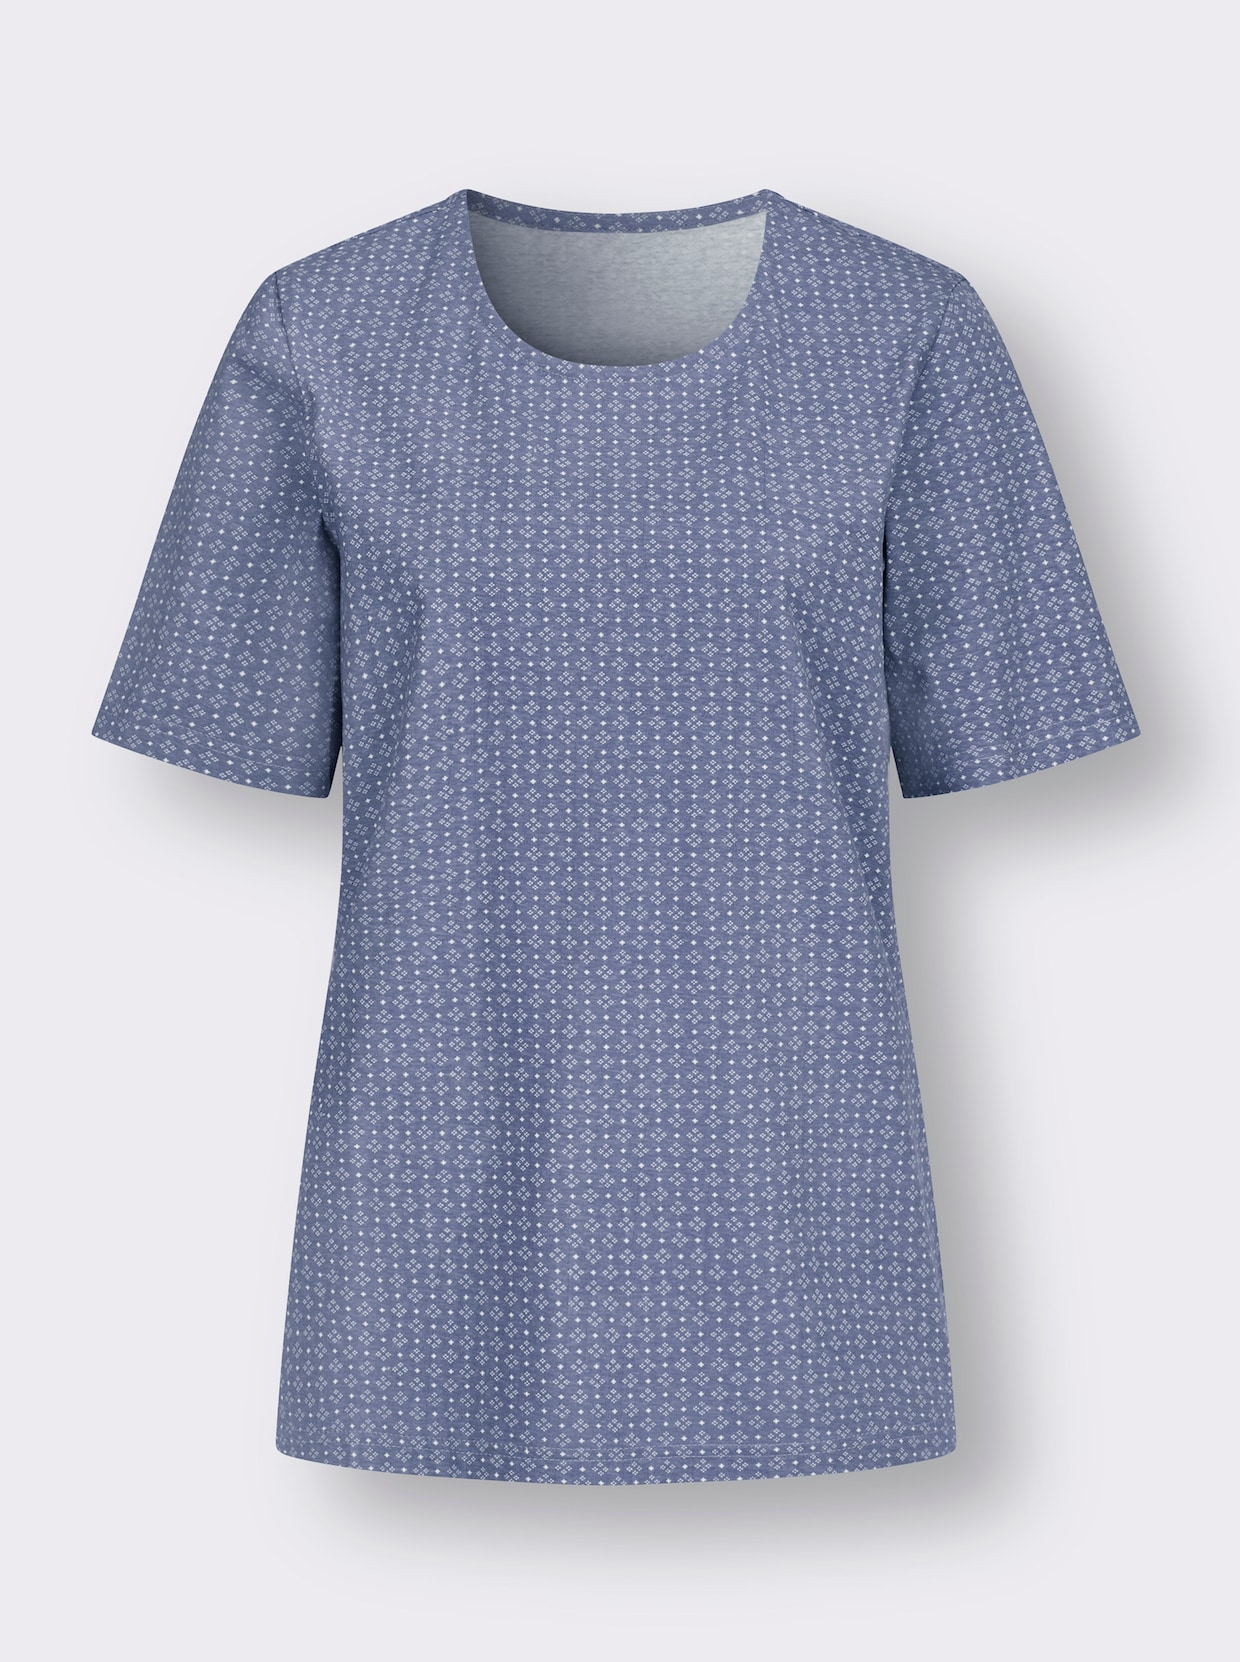 Rundhals-Shirt - taubenblau-weiß-bedruckt